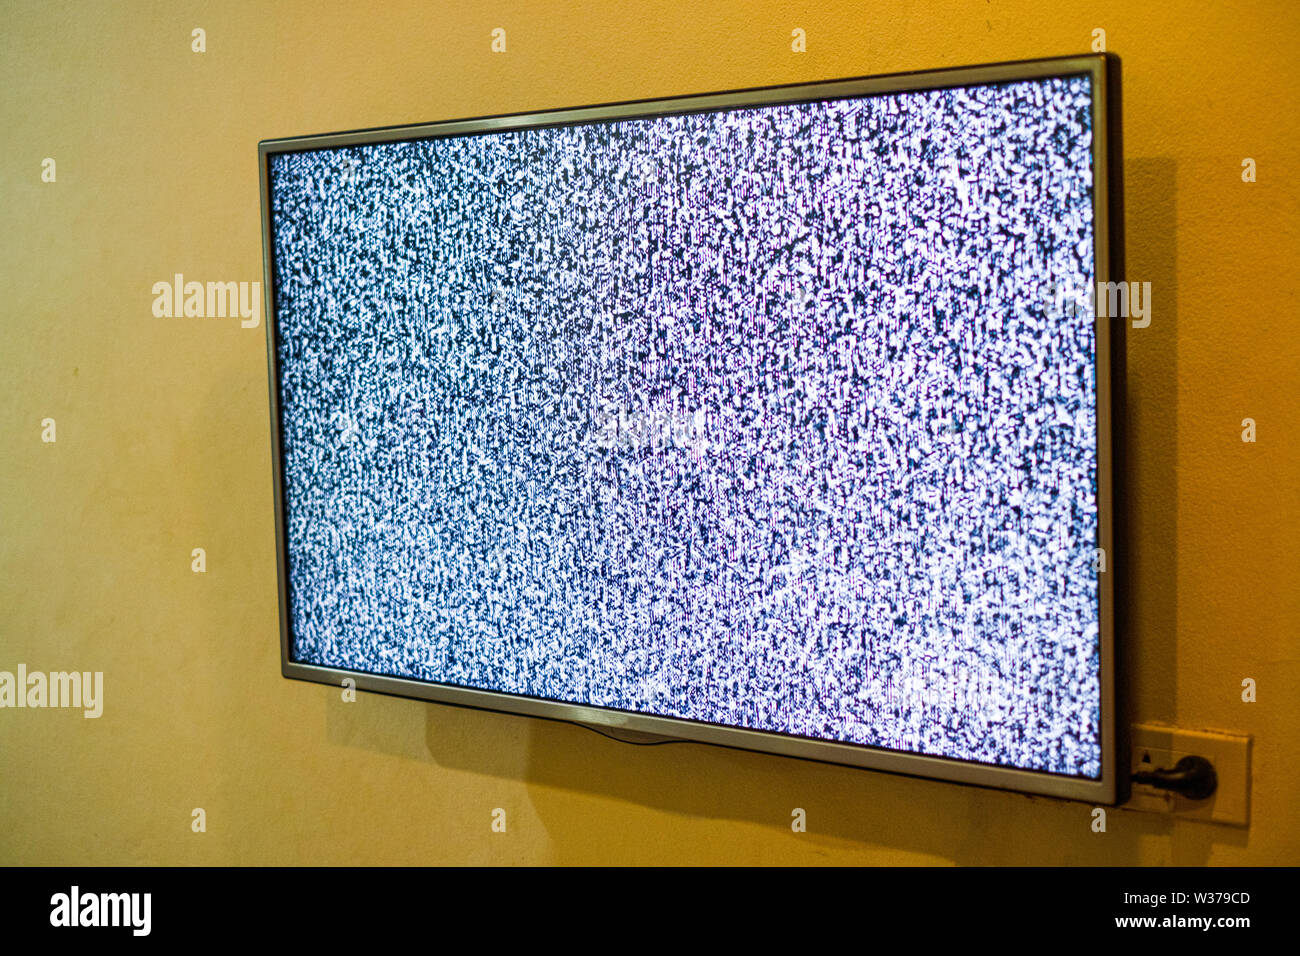 Kein Signal an Monitor, statisches Rauschen schlechte TV-Signal Schwarz und  Weiß Stockfotografie - Alamy